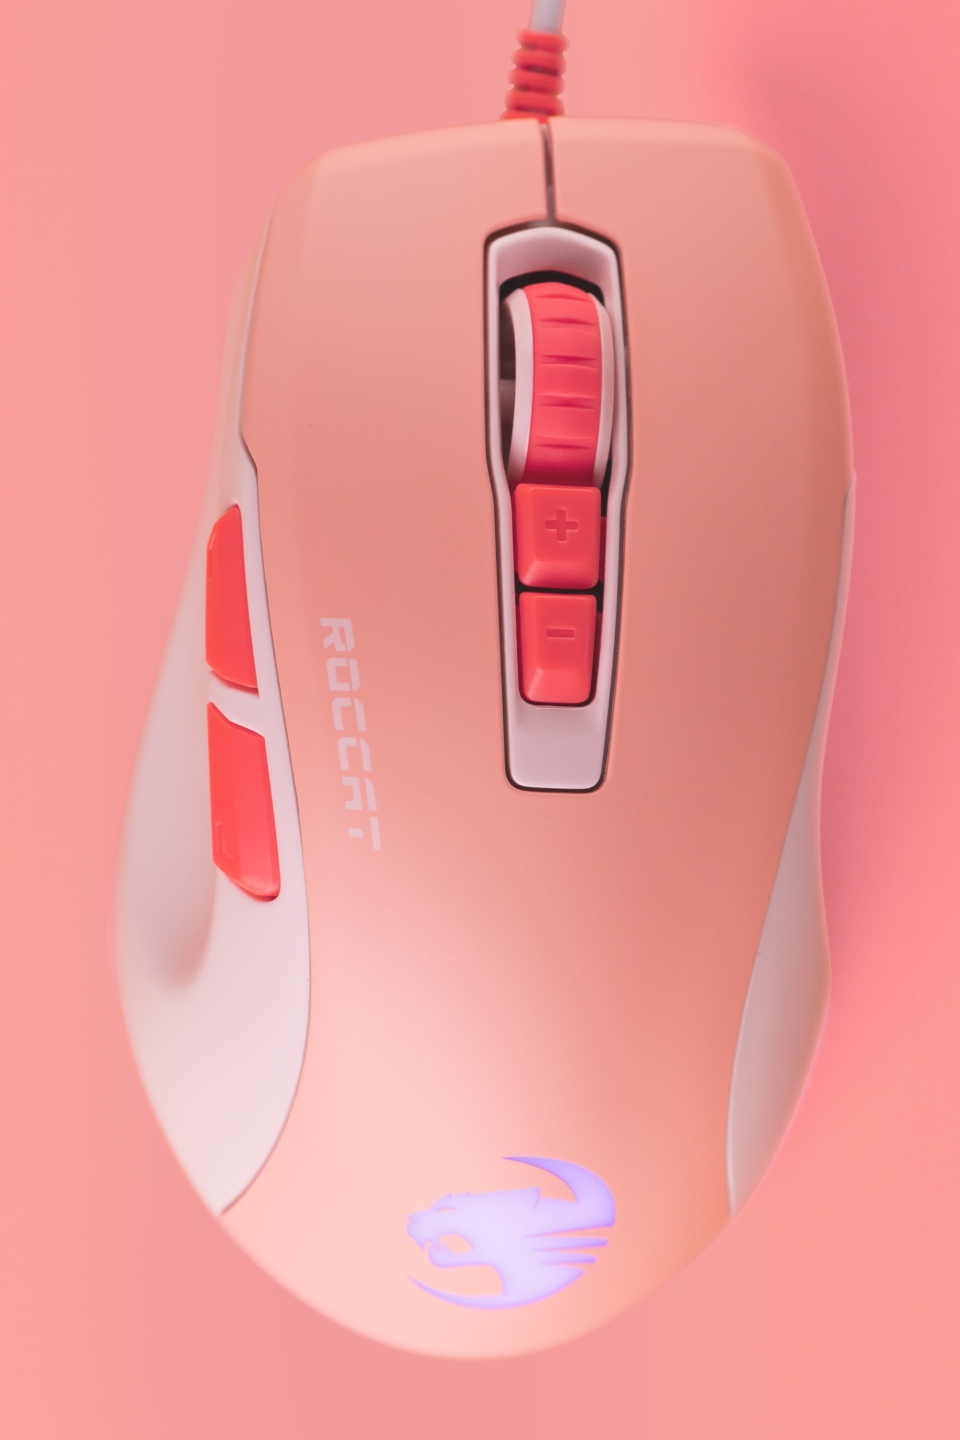 ROCCAT KONE PURE ULTRA의 인체공학적 디자인에 코랄 핑크 컬러를 더했다.